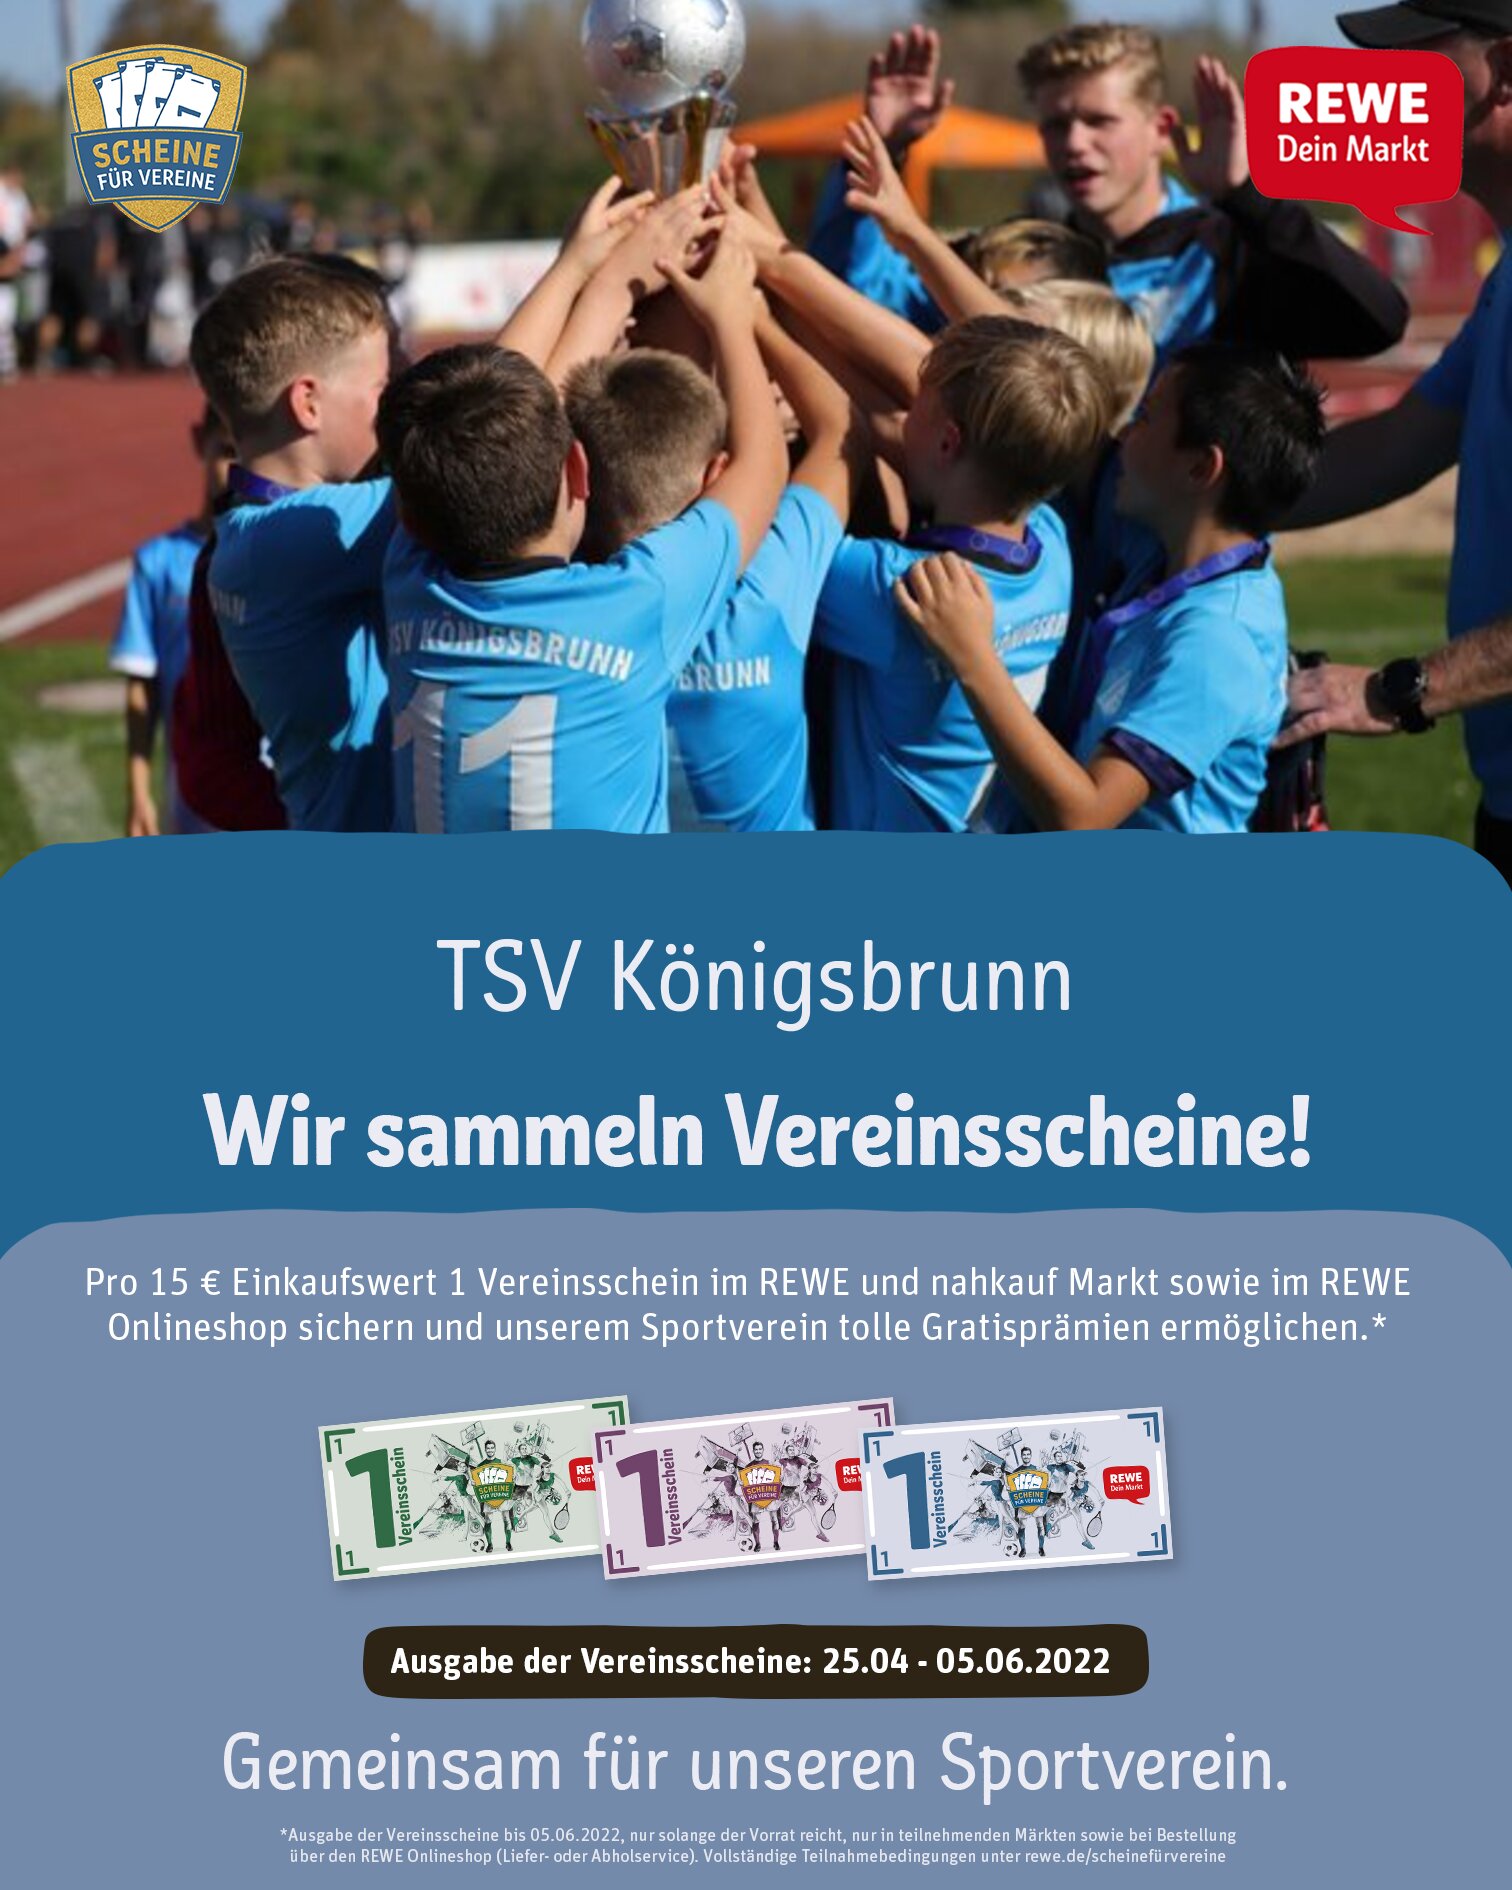 TSV Königsbrunn Scheine für Vereine